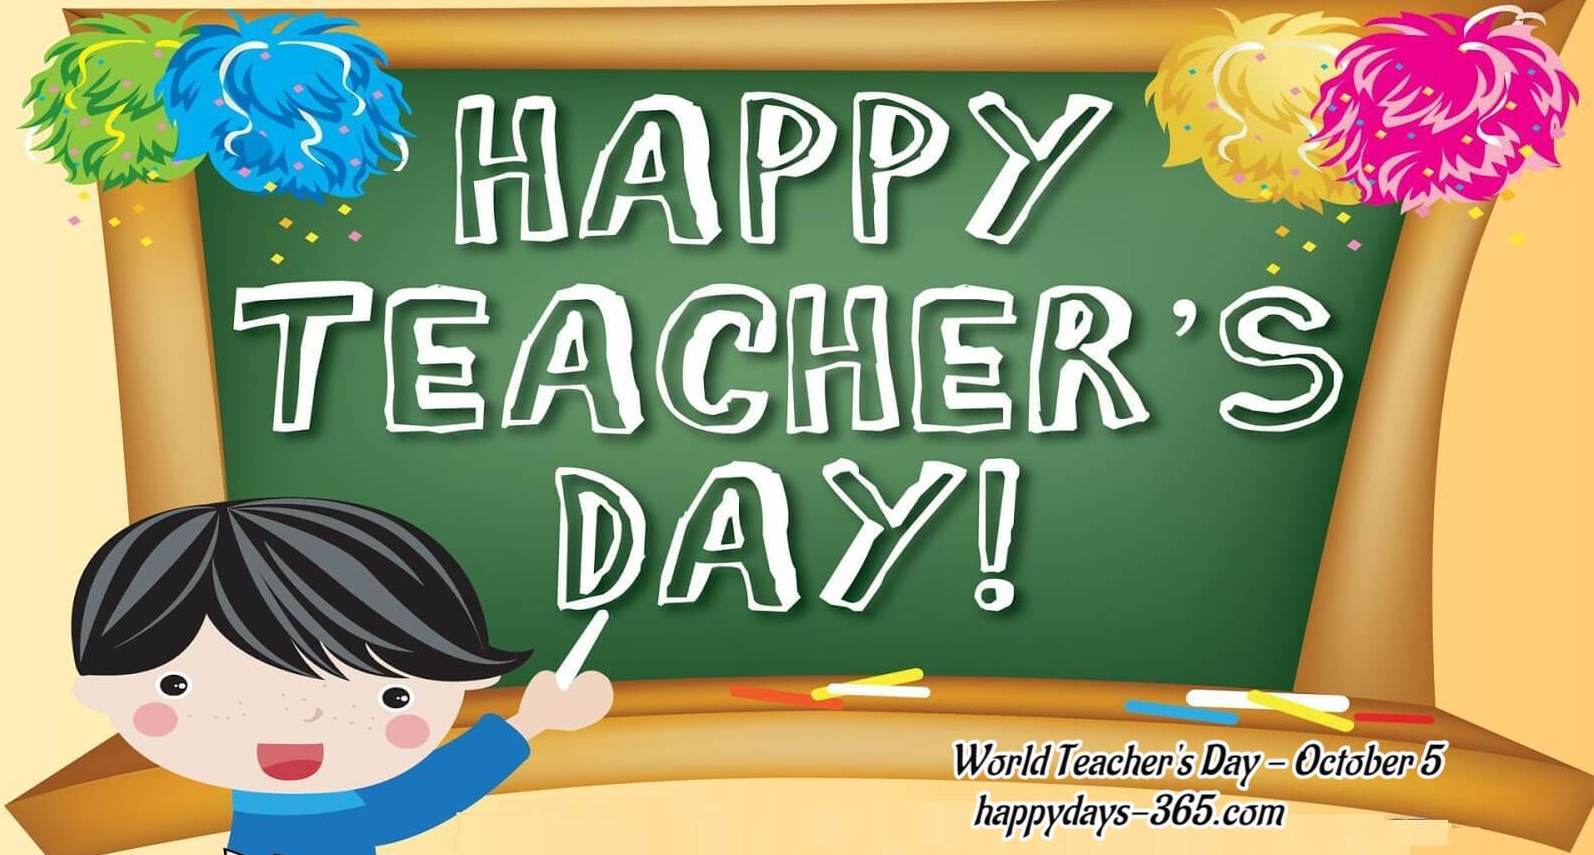 World Teacher's Day 2019. Happy Days 365